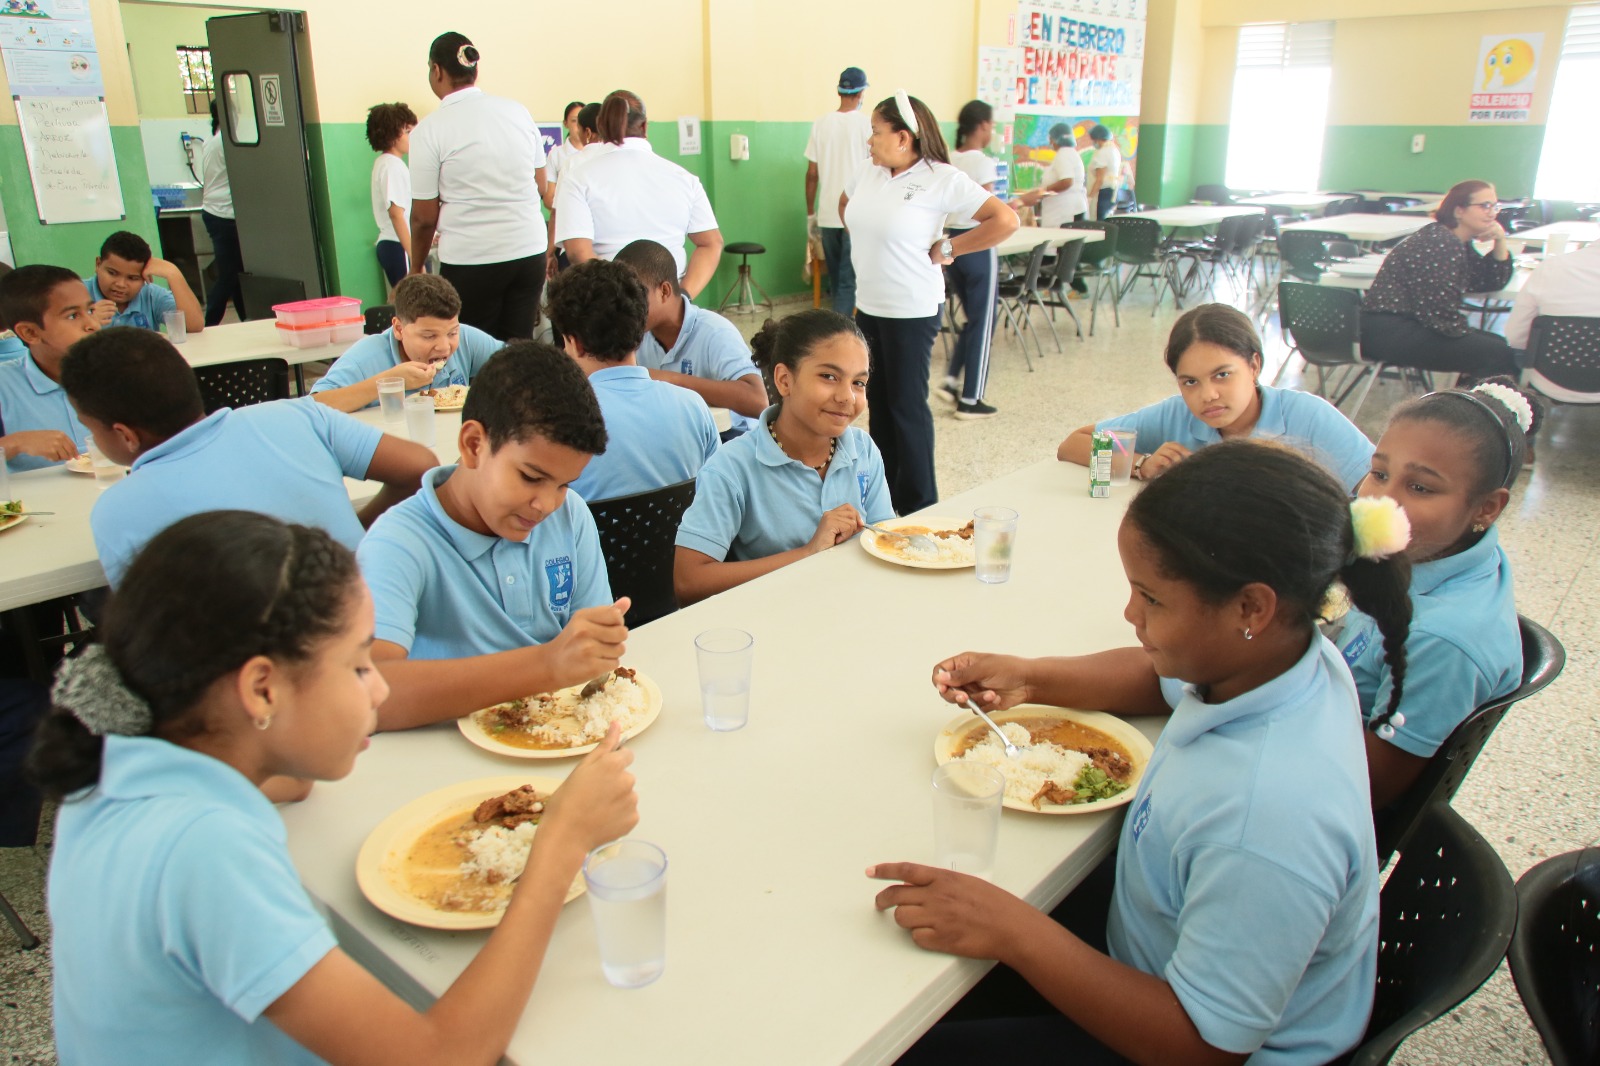 REPÚBLICA DOMINICANA: INABIE termina año escolar con más de 957 millones de raciones alimenticias entregadas y mejoras en el menú